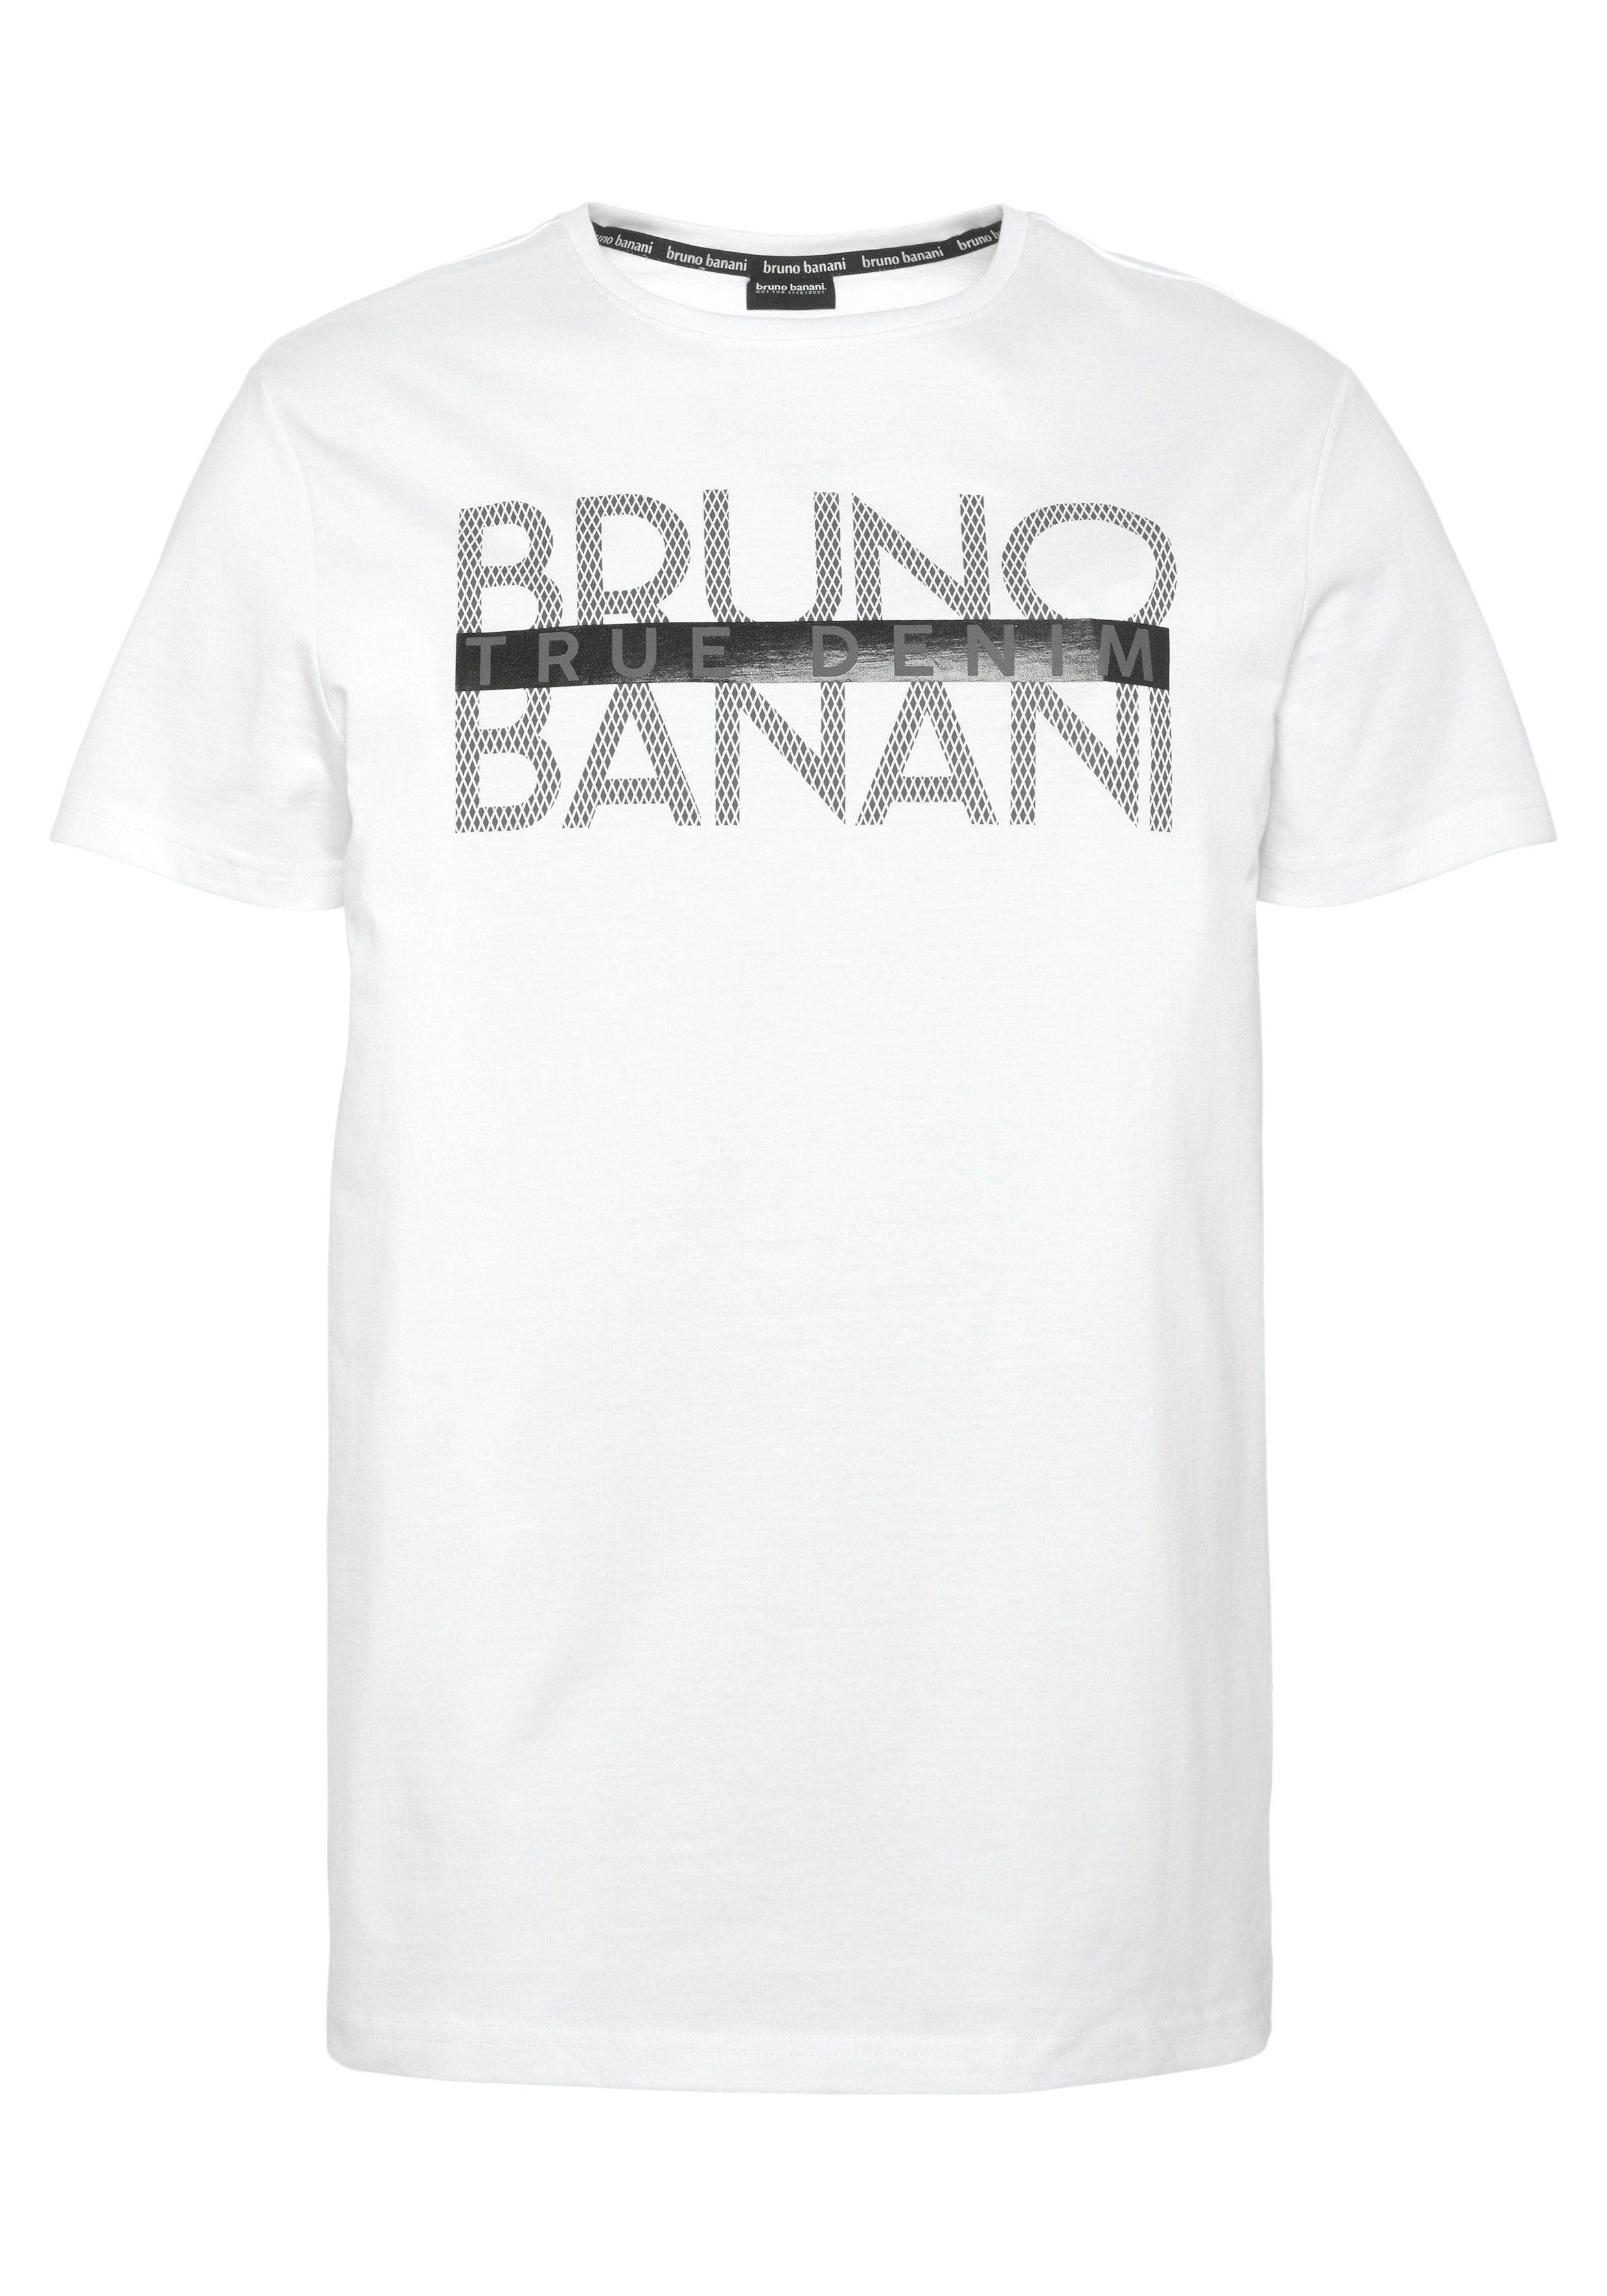 T-Shirt mit Banani Print glänzendem Bruno weiß